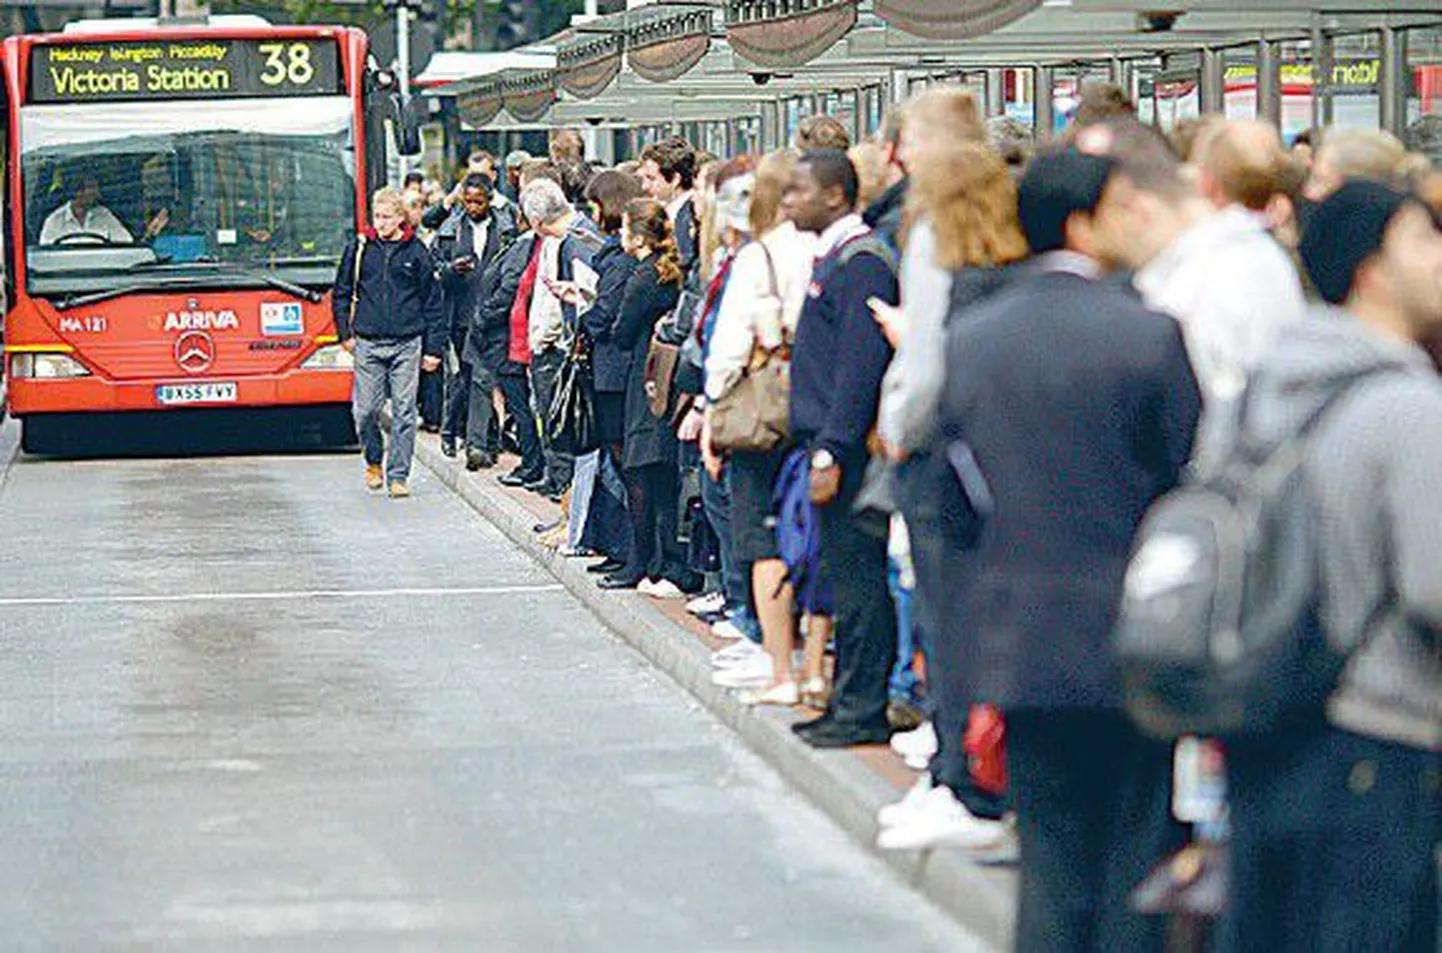 Kaose vältimiseks toodi linnatänavaile lisabussid. Pildil londonlased eile Victoria jaamas.